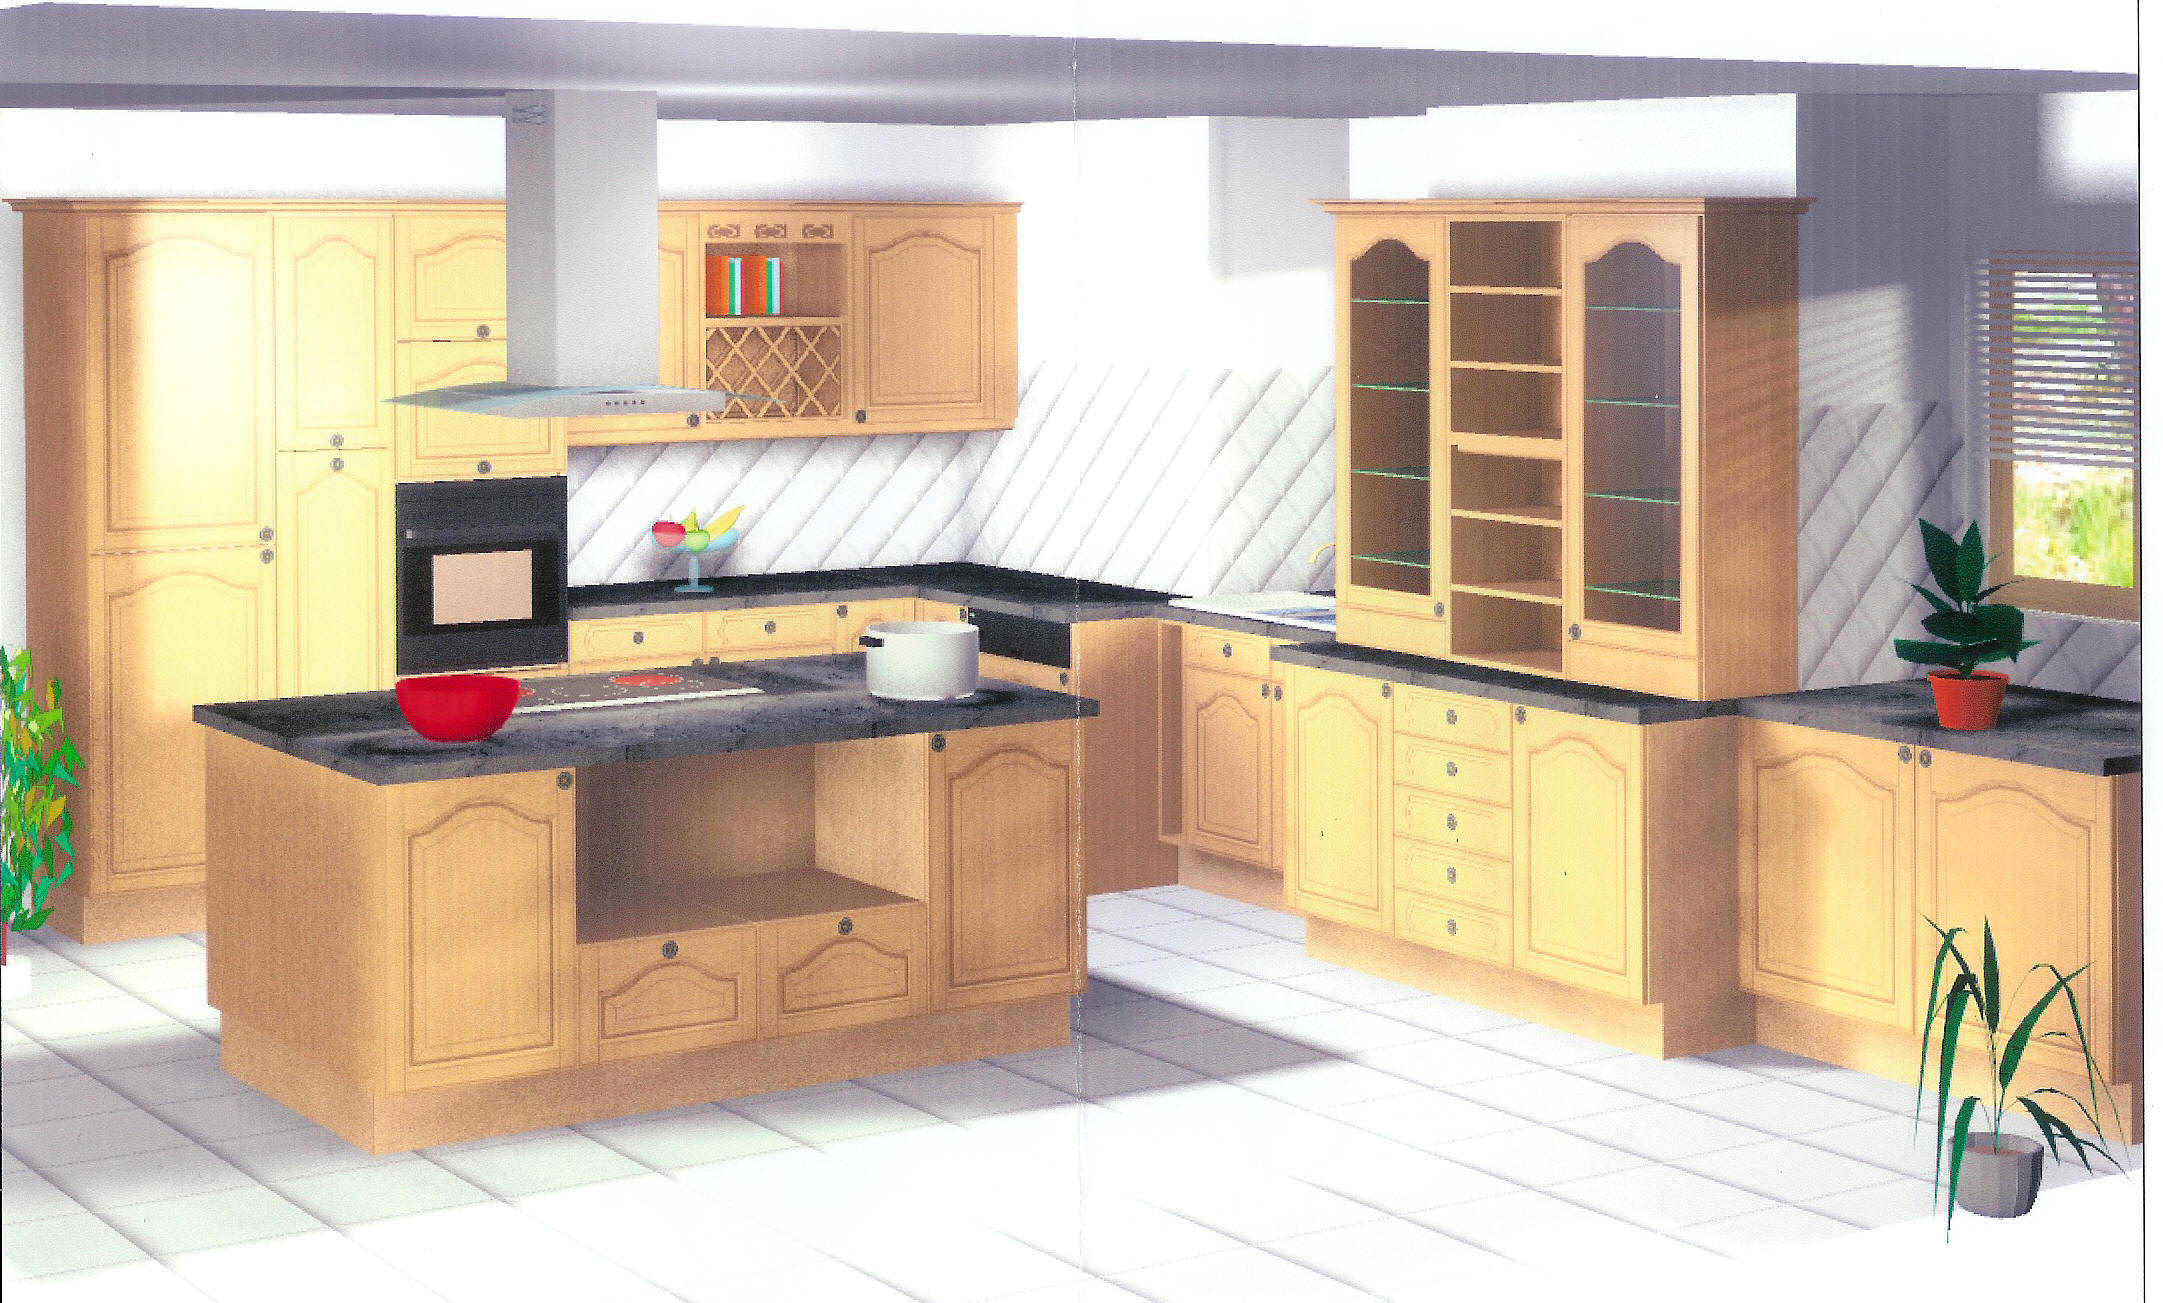 Image 3D de la cuisine